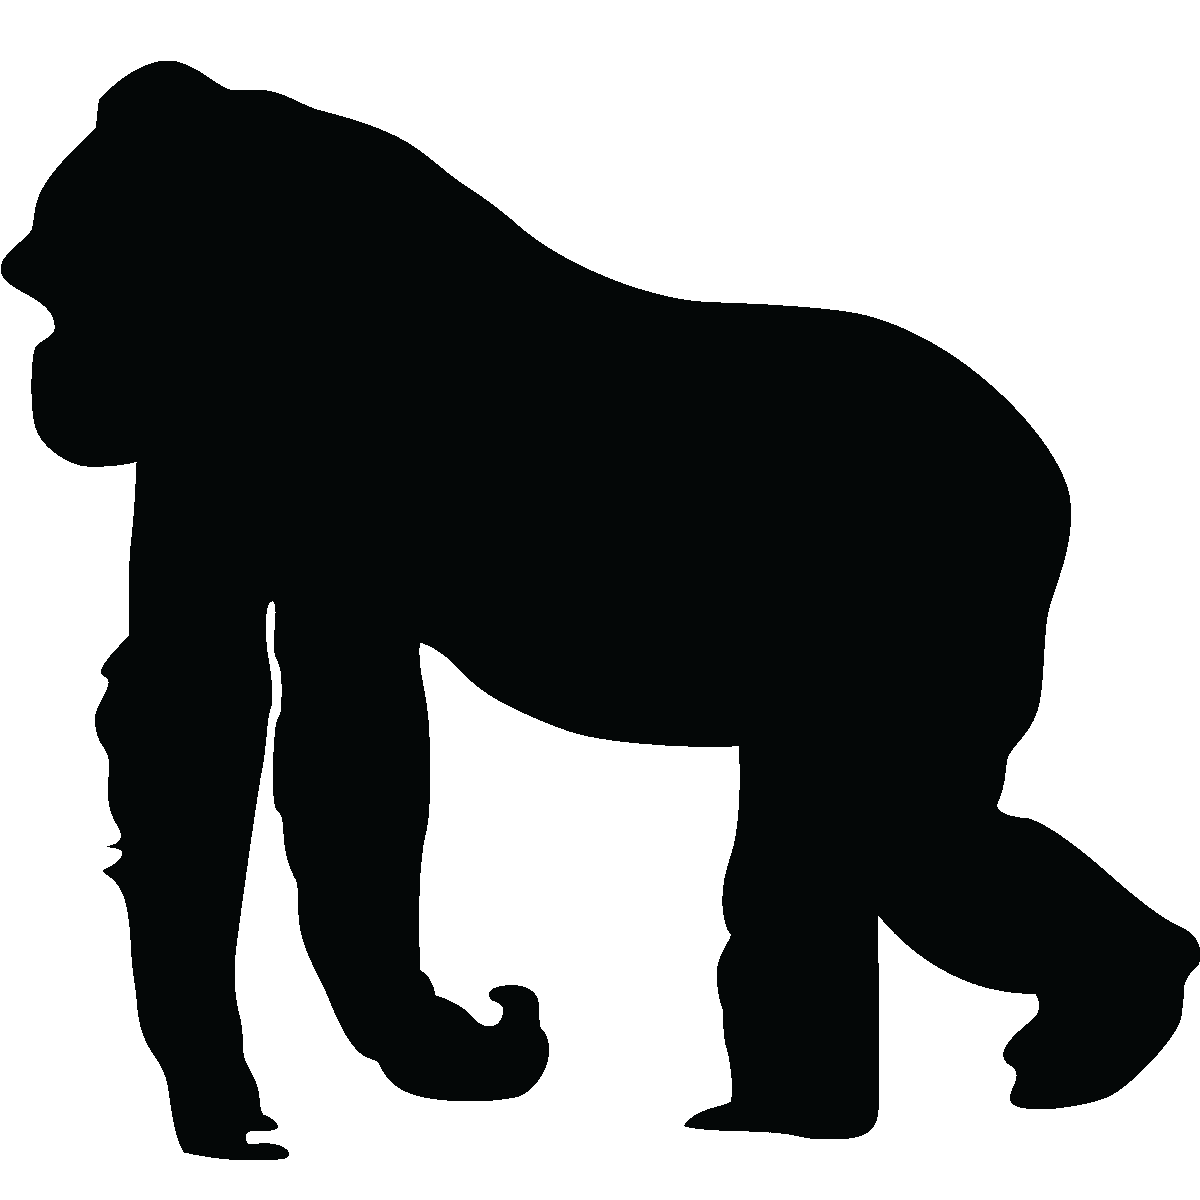 Gorilla Silhouette Ape Clip art - gorilla vector png download - 1200* ...